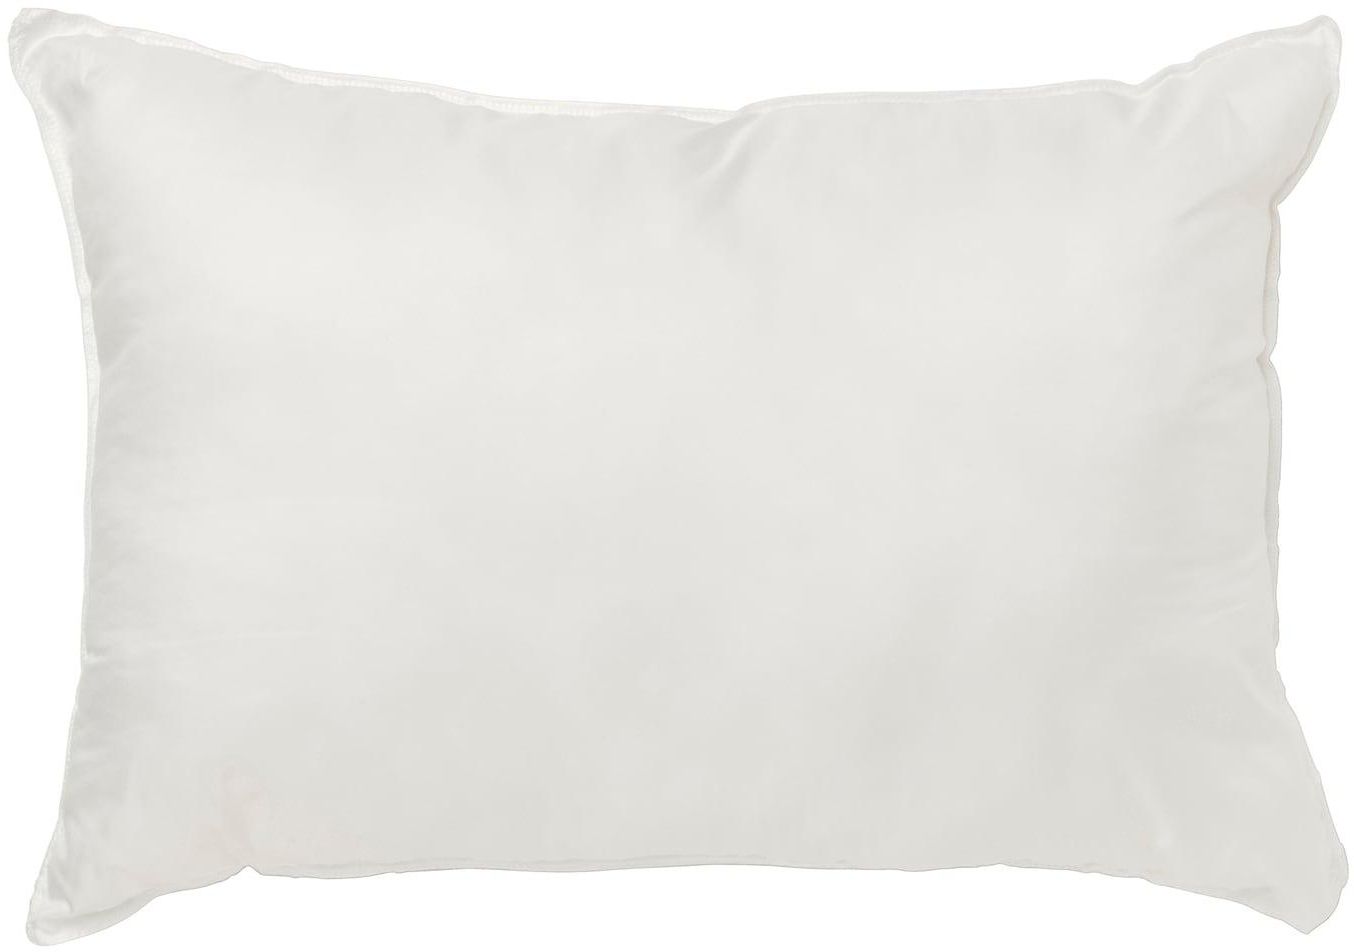 INNER Cushion pad - white/firm 40x58 cm